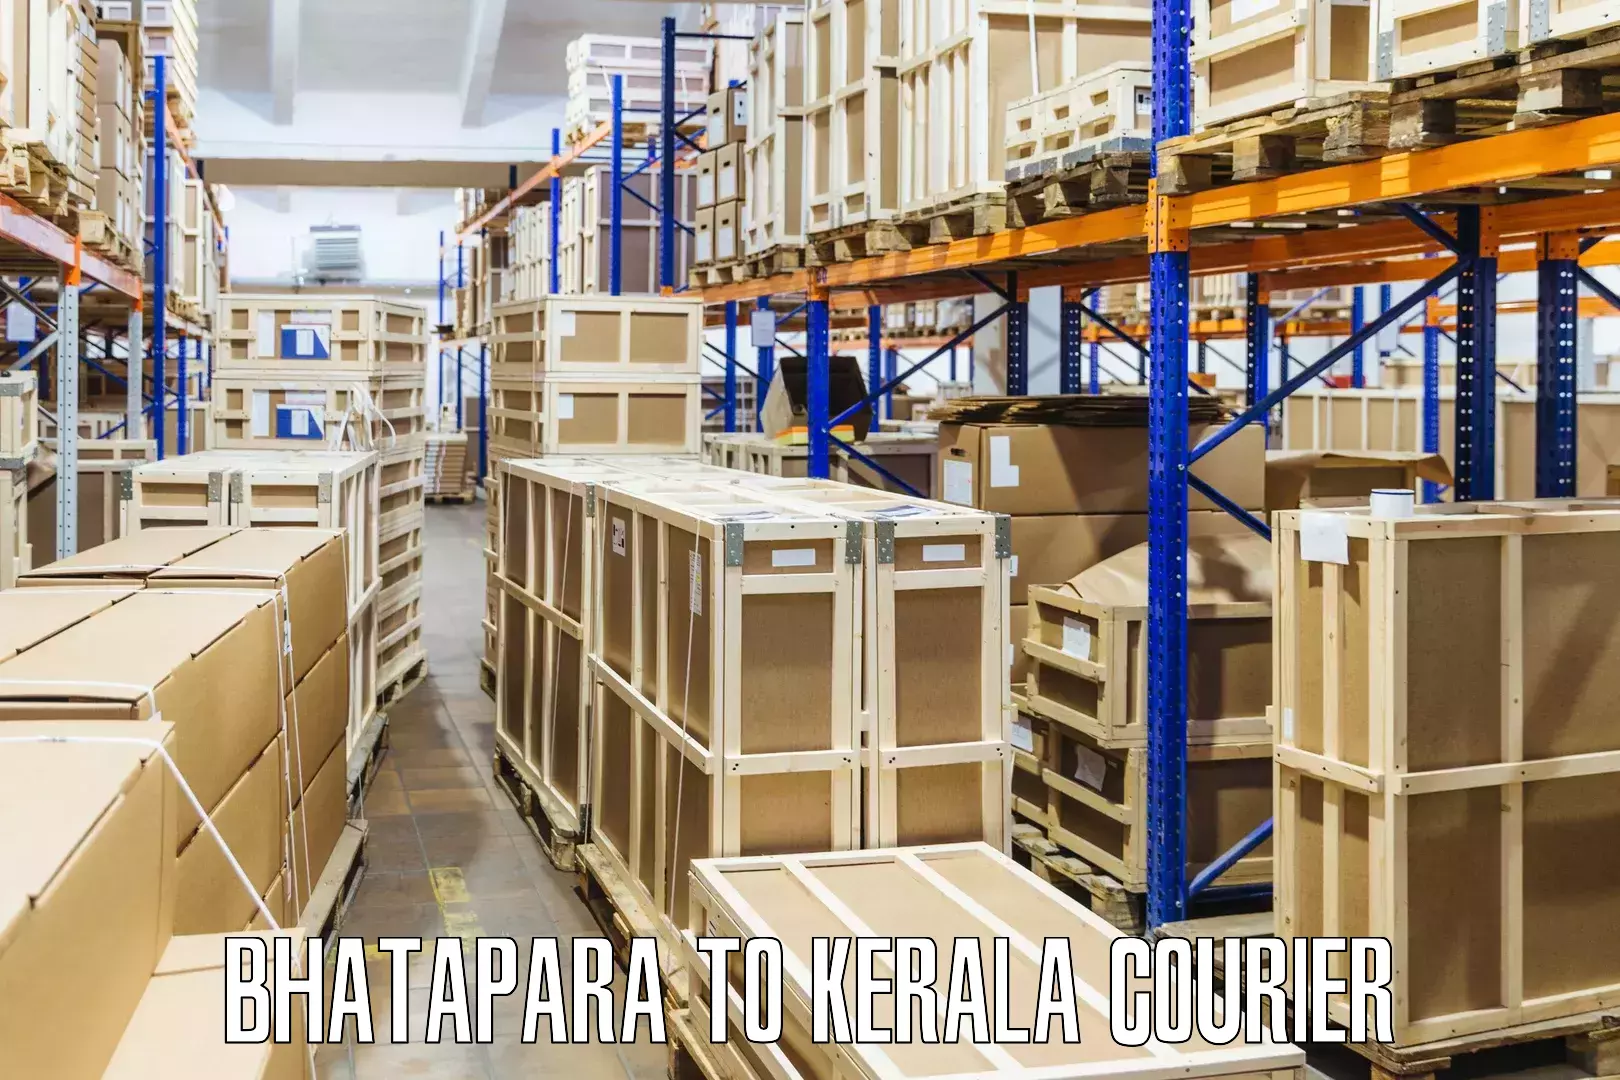 Custom courier packages Bhatapara to Mundakayam